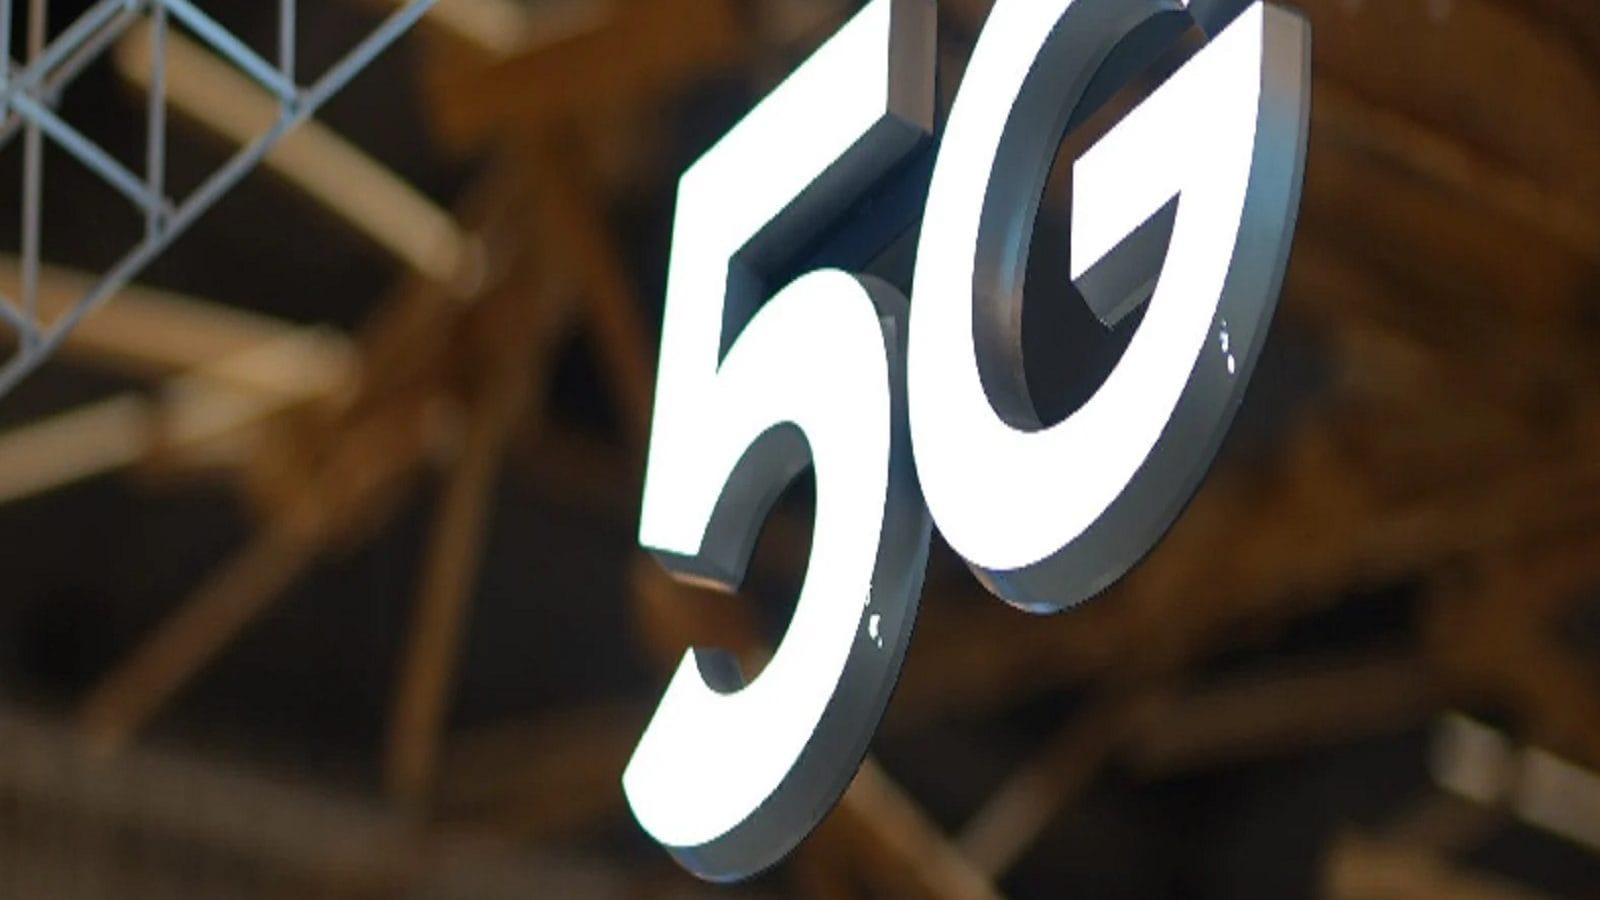 5G ‌পরিষেবায় 4‌G‌–এর ১০০ গুণ স্পিড!‌ ব্যবহারকারীরা কীভাবে উপকৃত হবেন? জানুন